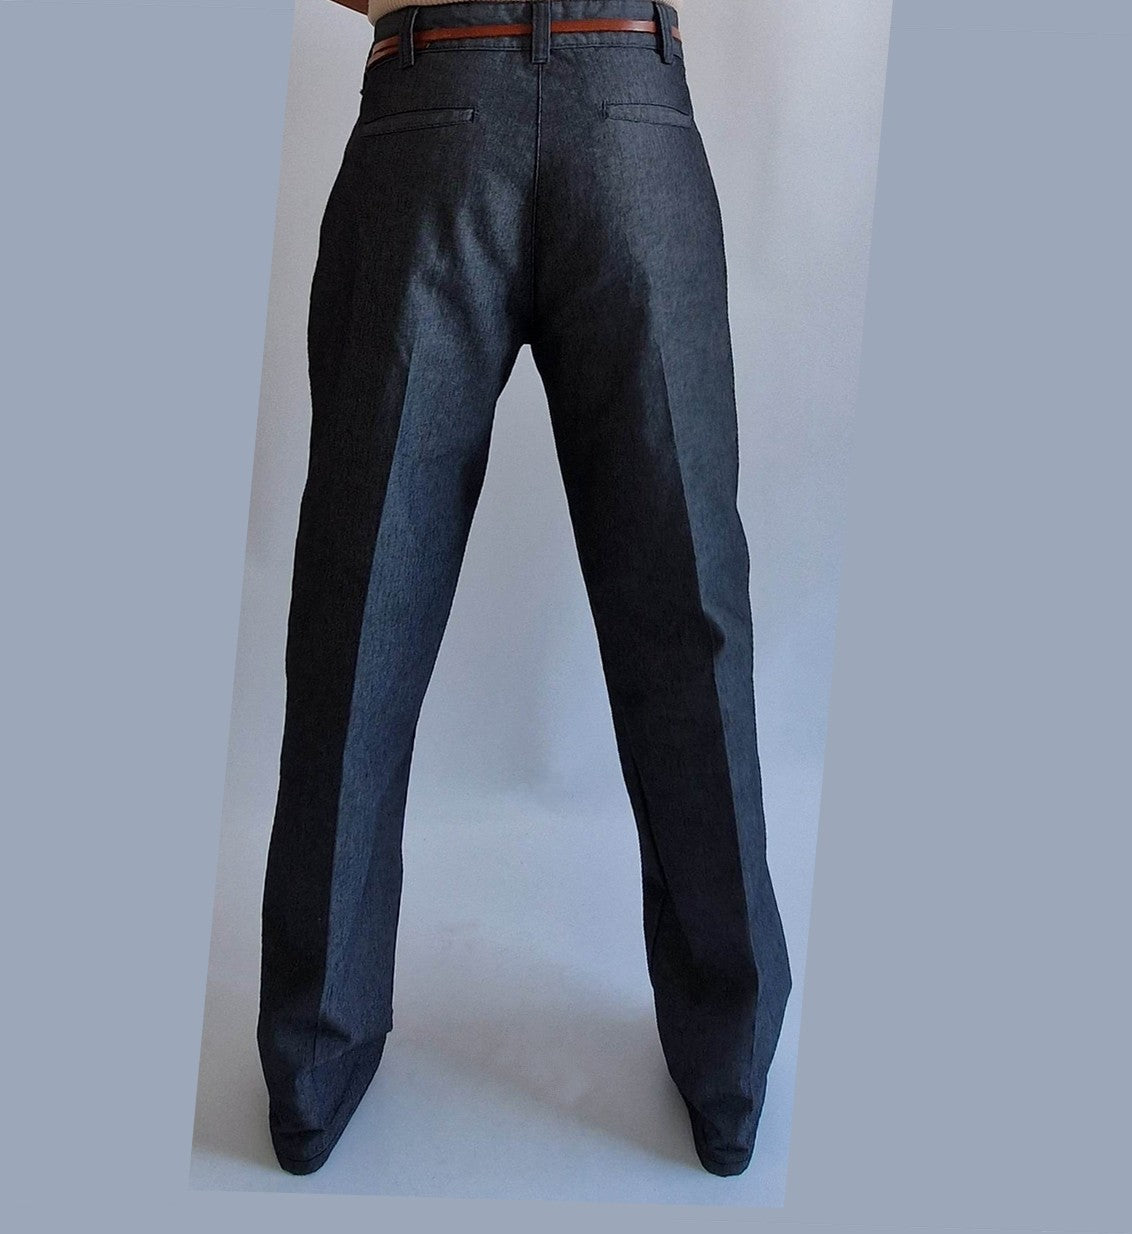 pantalon Carhartt vintage pour femme noir Bruxelles Belgique